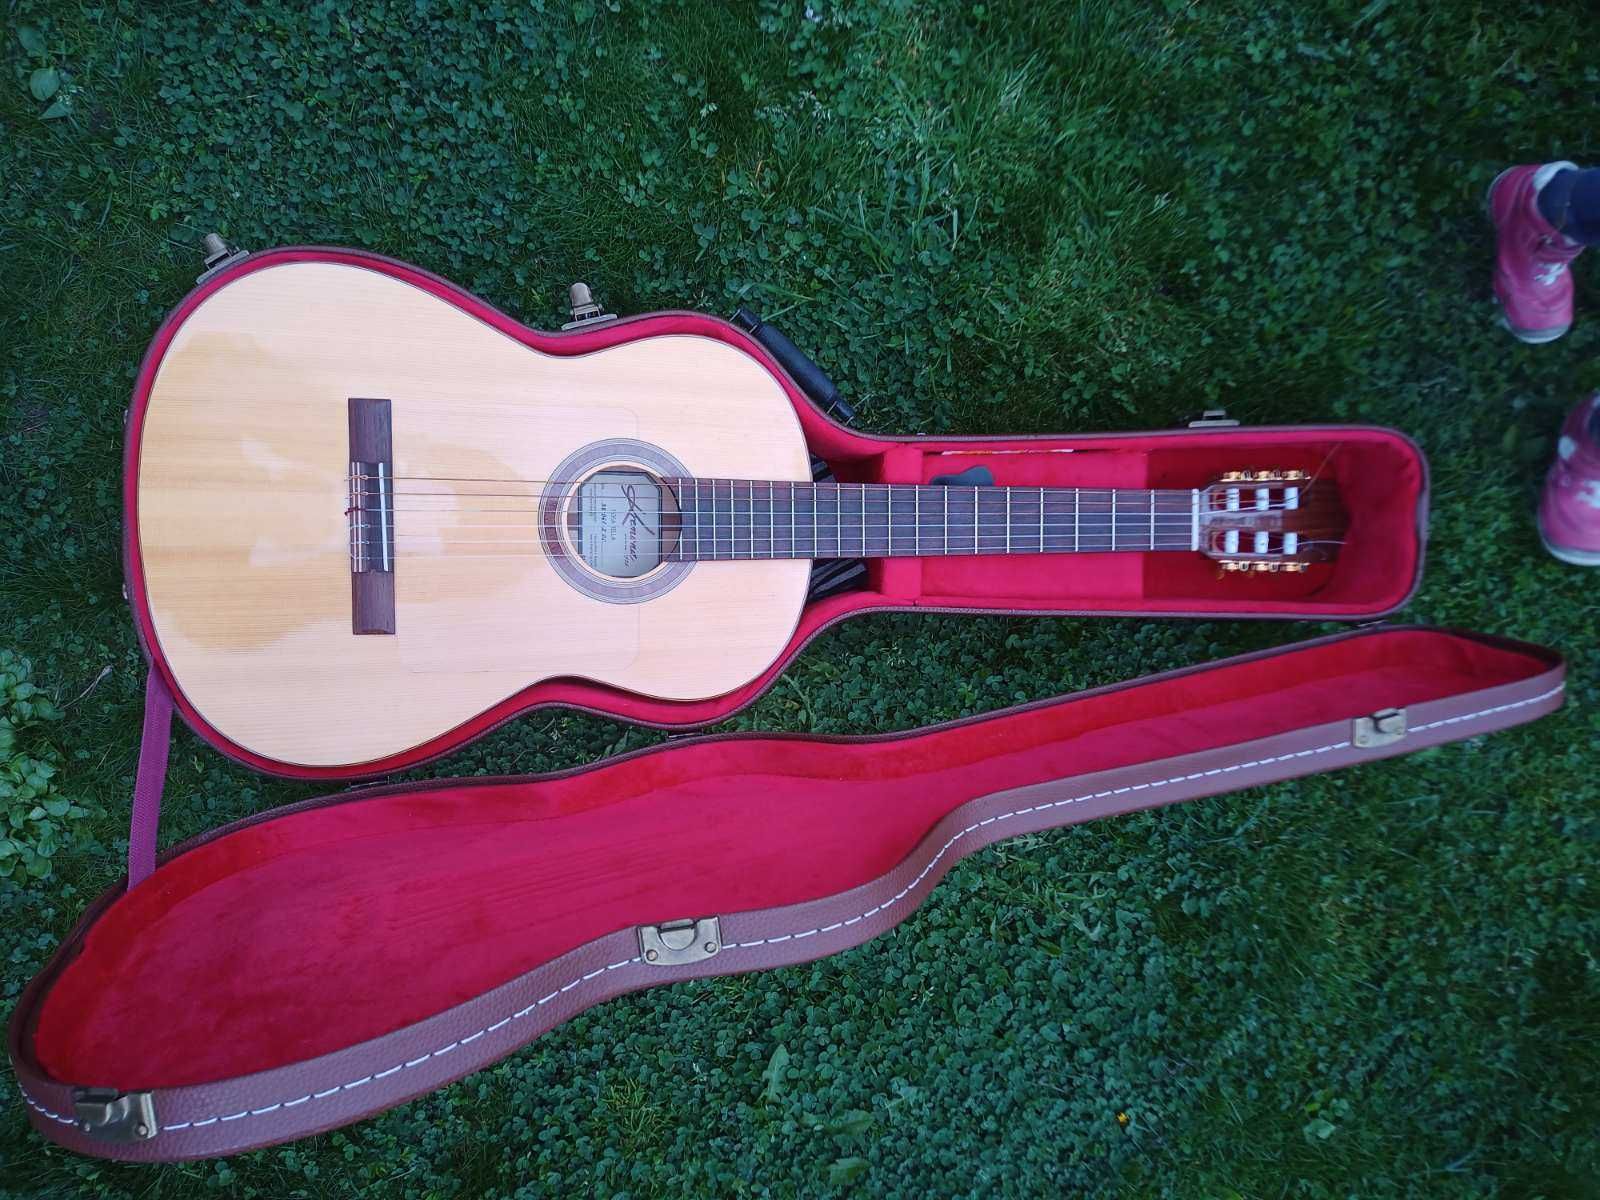 Продавам класическа - фламенко китара KREMONA - ROSA BELLA - масив